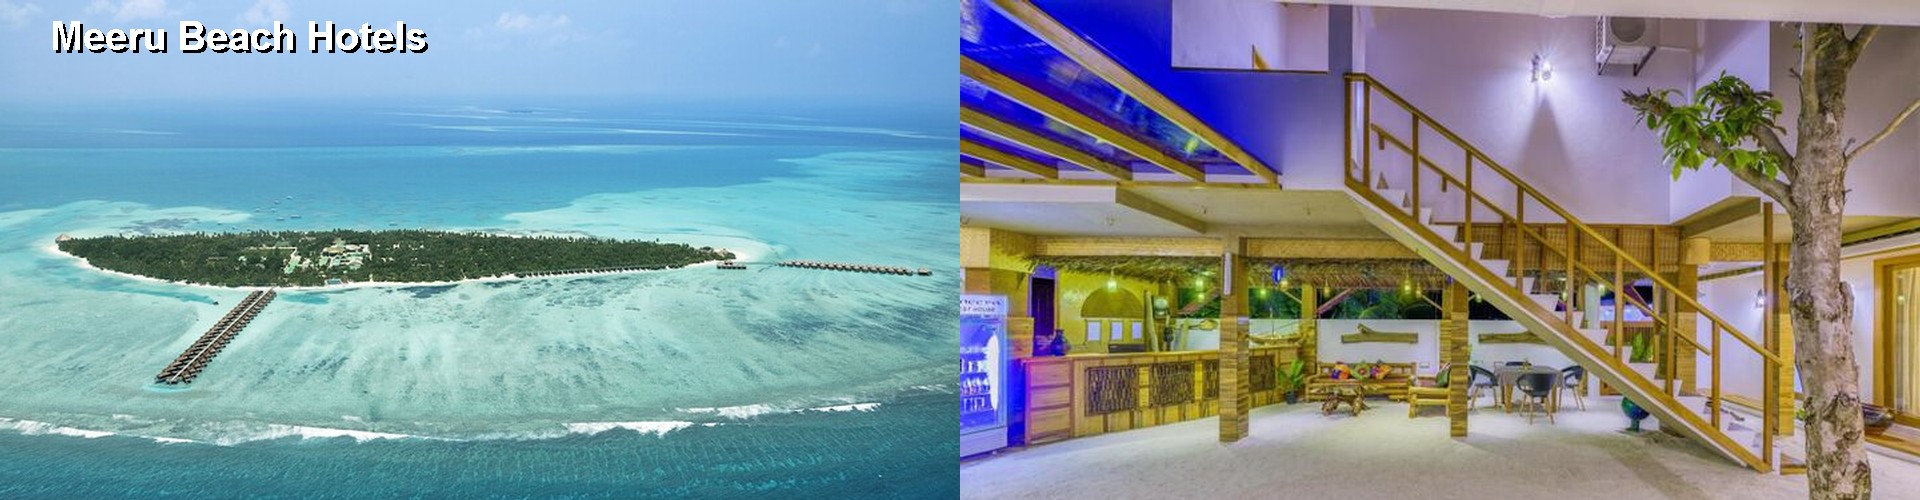 5 Best Hotels near Meeru Beach